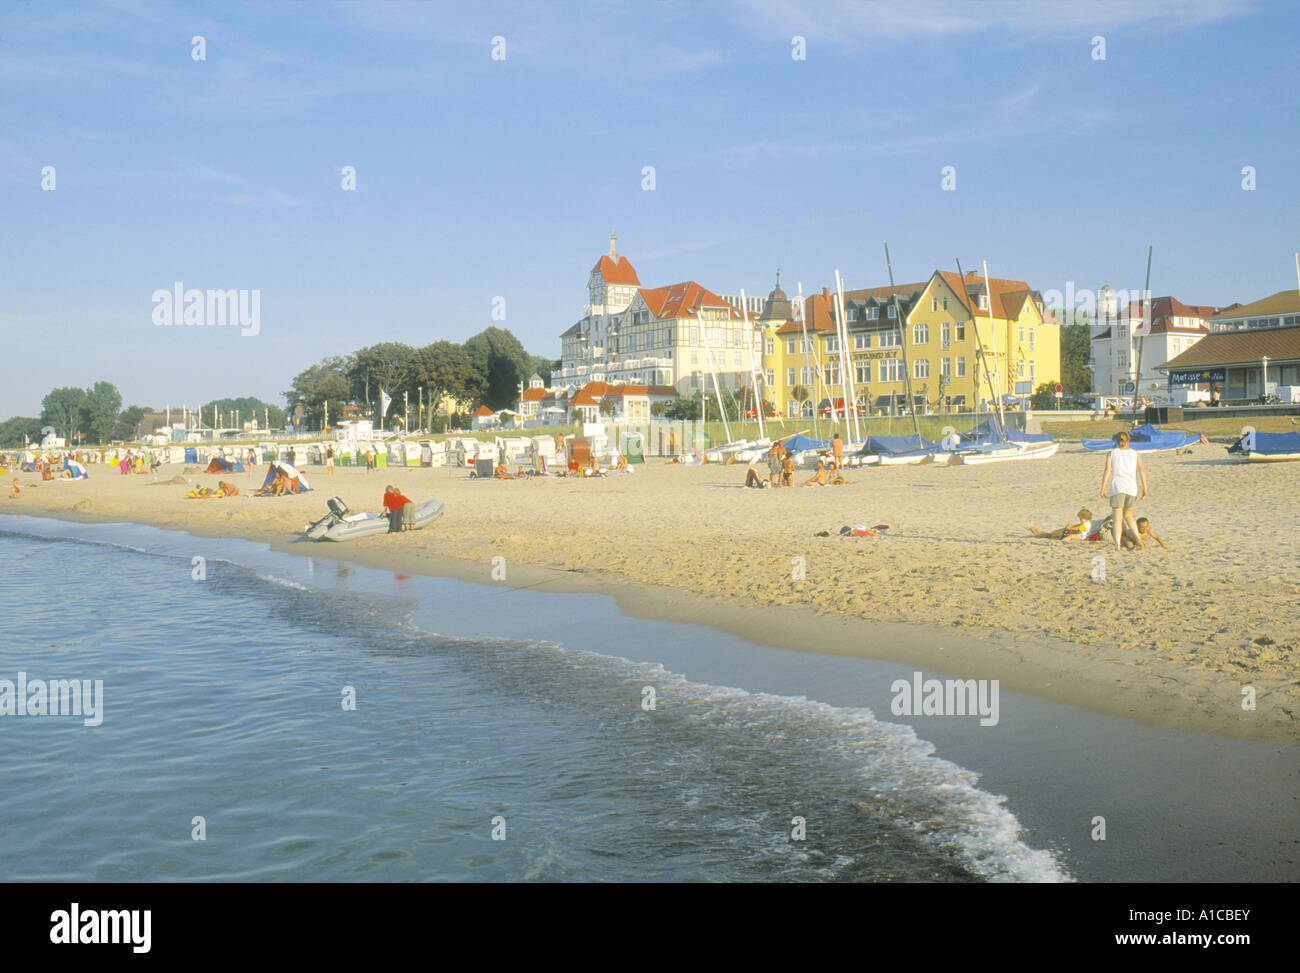 Strand und Hotels, Ostsee, Usedom, Mecklenburg-Vorpommern, Deutschland Stockfoto